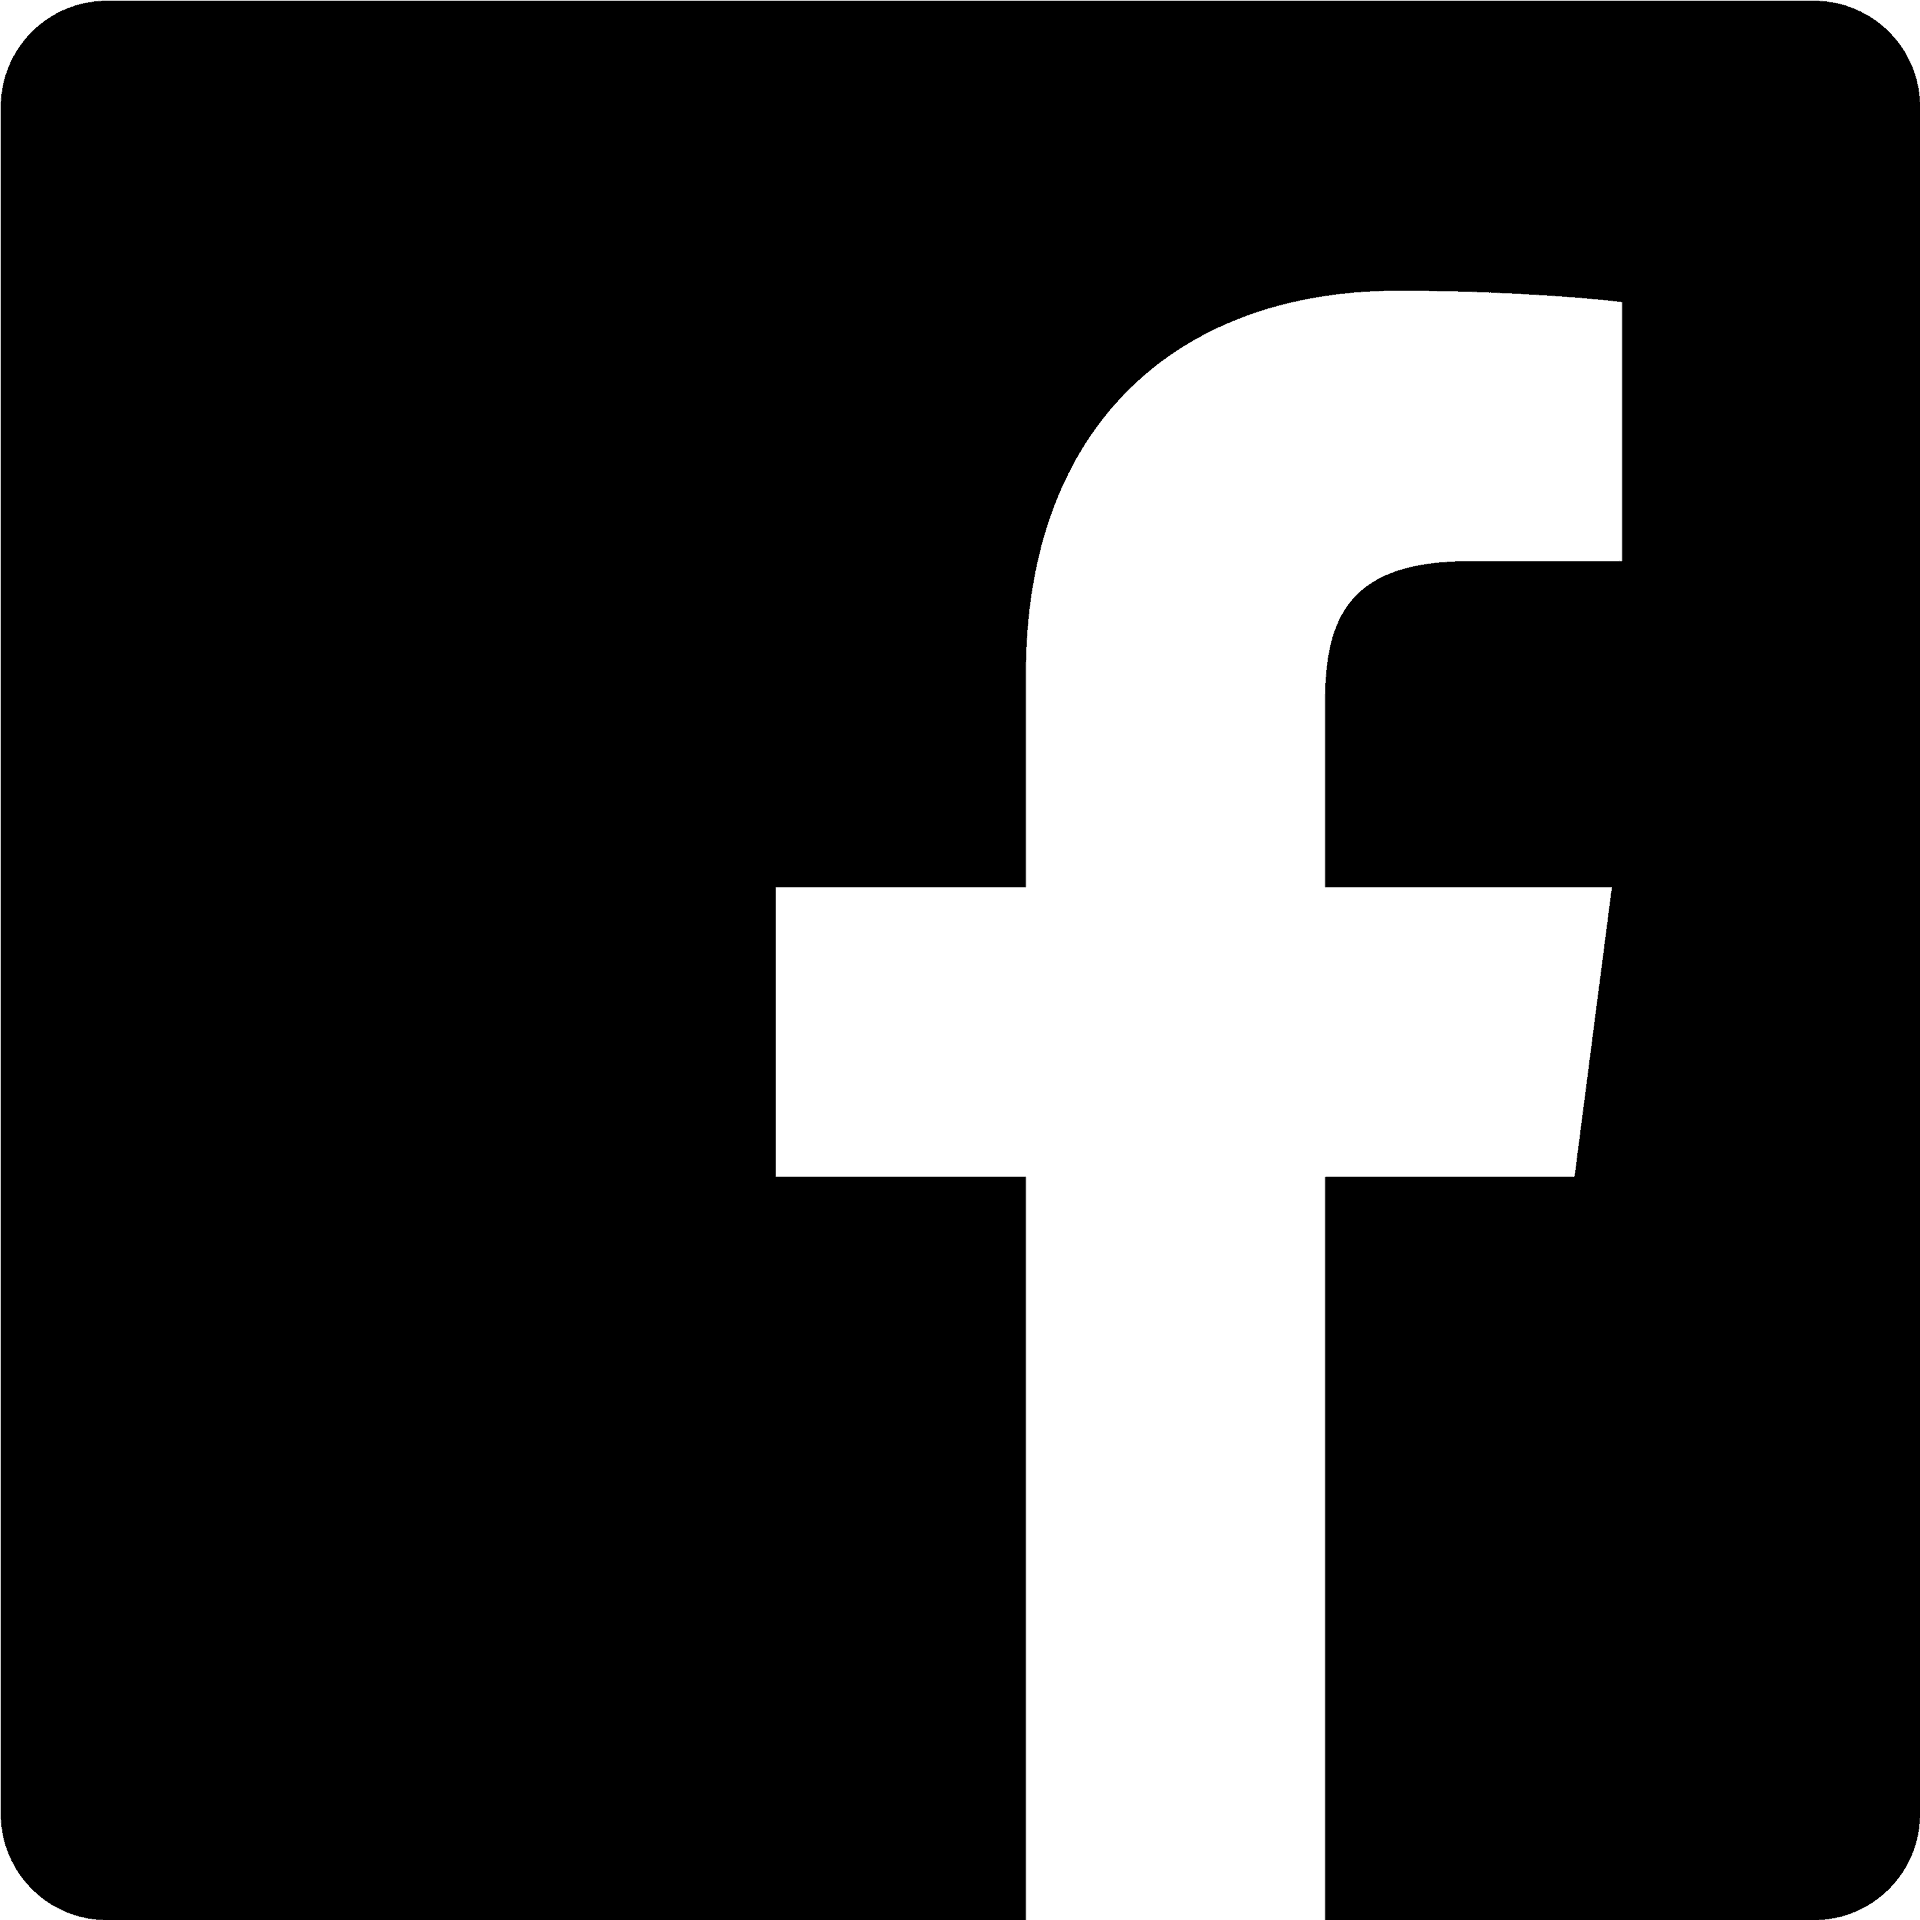 Facebook Logo Black Background PNG image